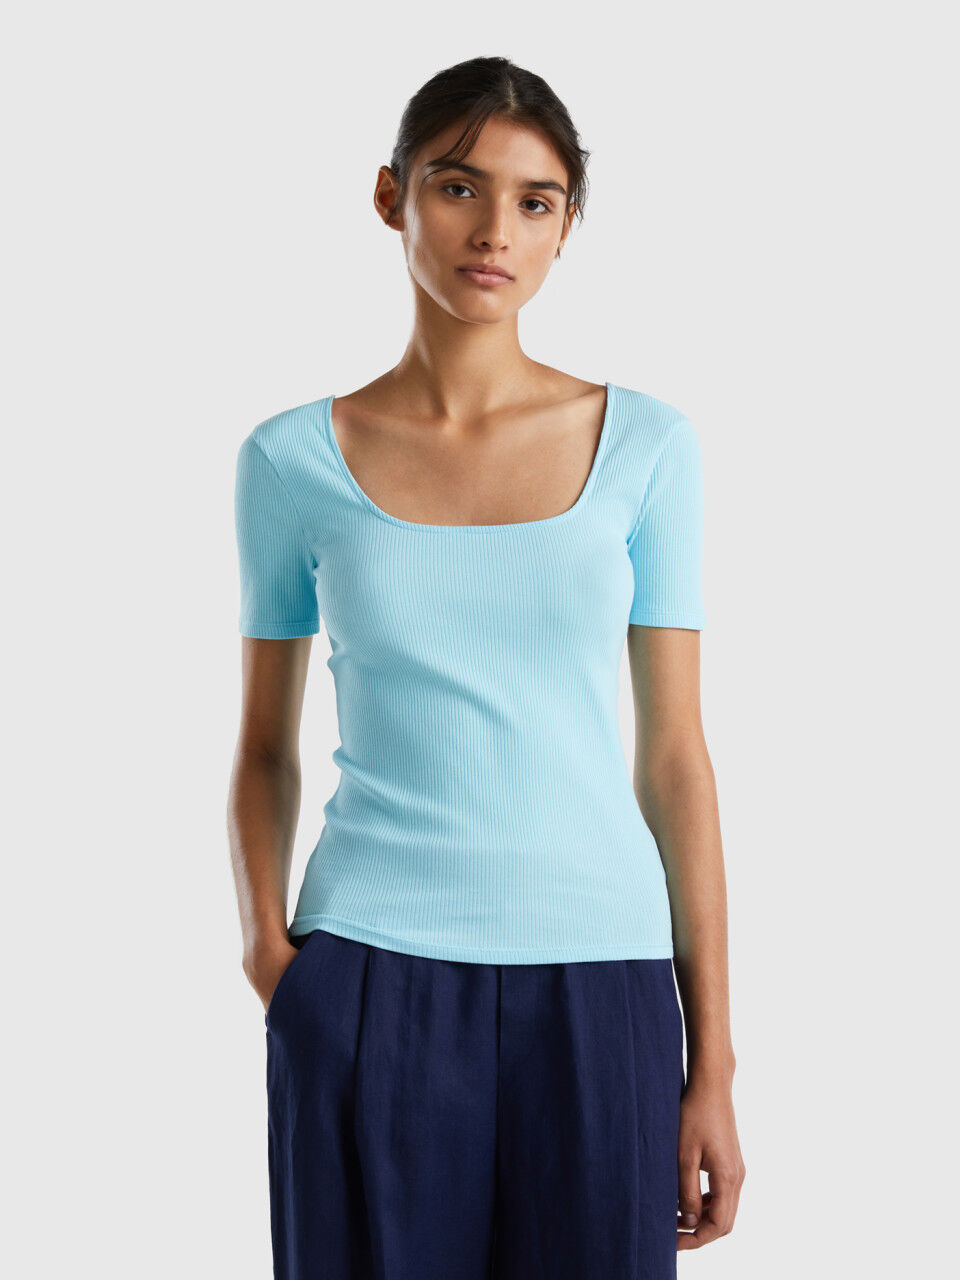 derrochador Teleférico grano Camisetas Mujer y Tops Nueva Colección 2023 | Benetton